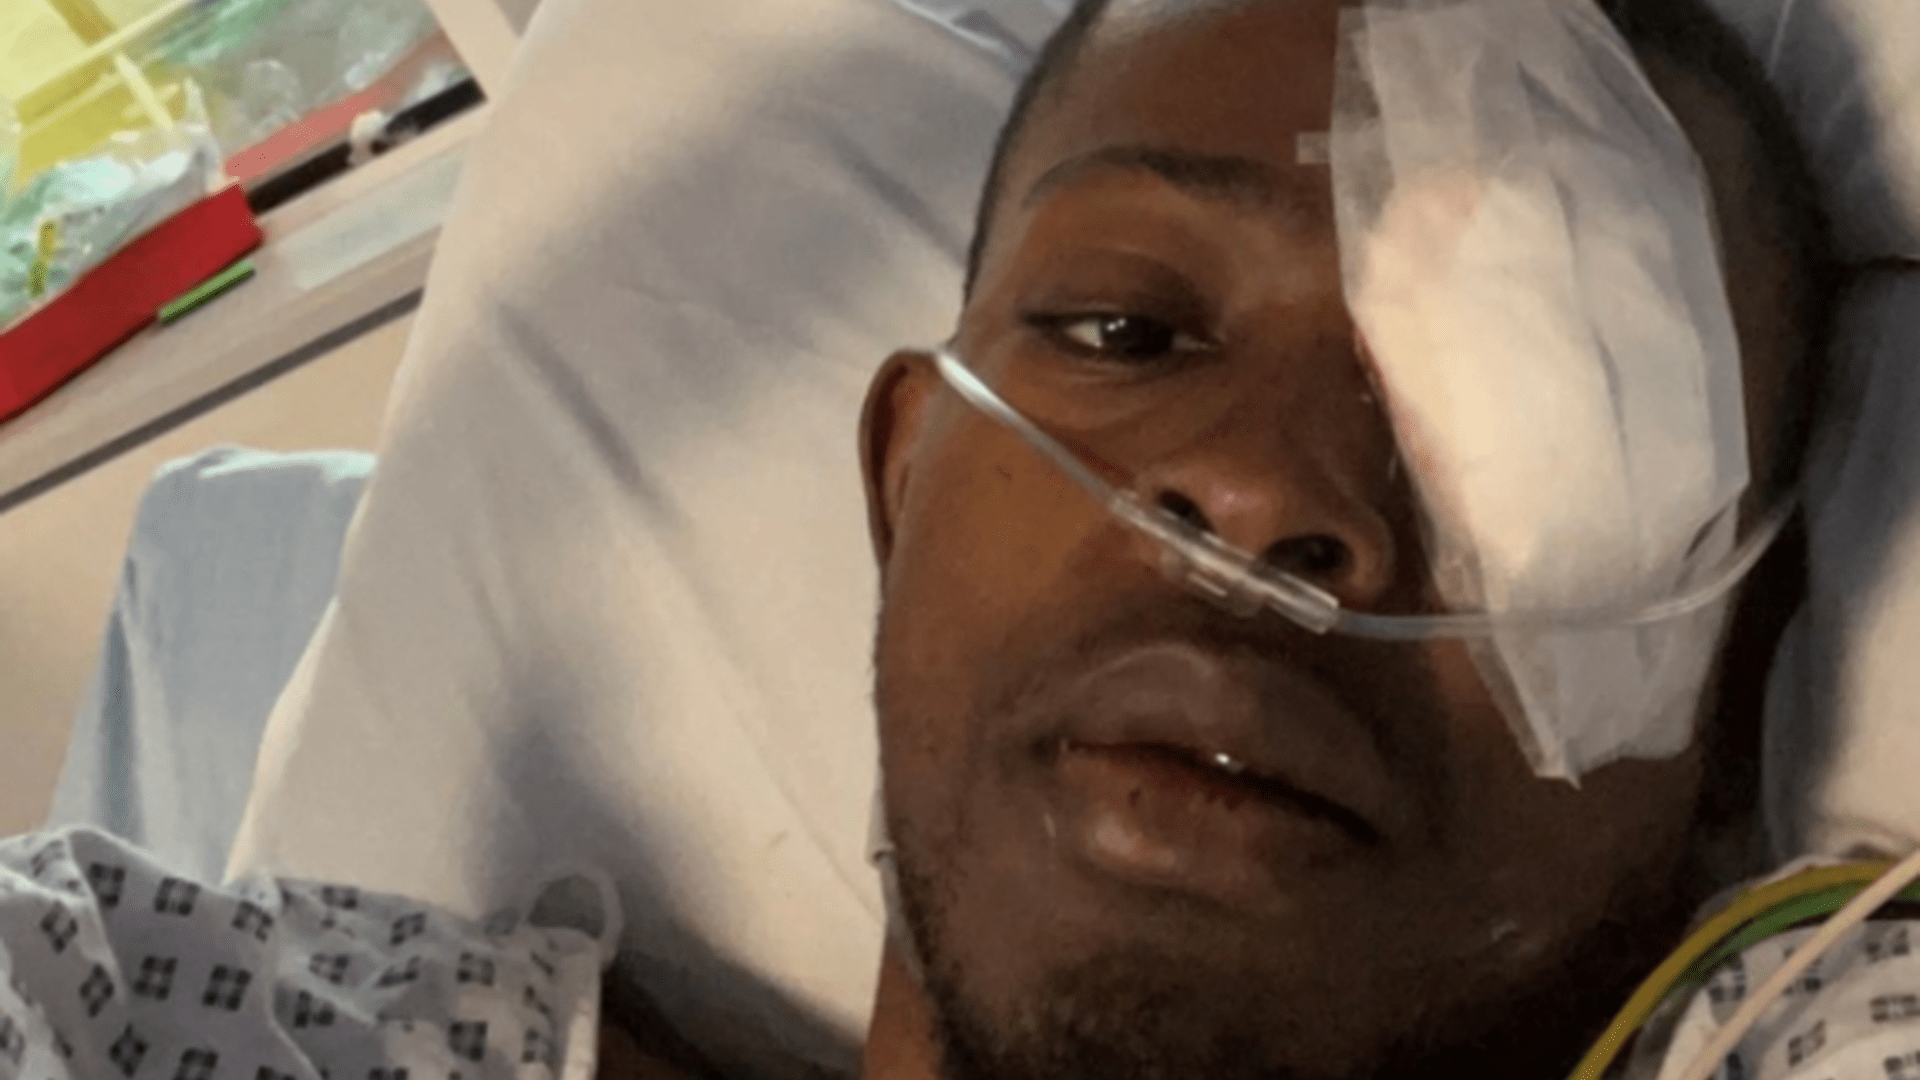 Fotos impactantes muestran que el ojo de un hombre “se cae de la cabeza”, pero fueron necesarios nueve viajes al hospital para finalmente obtener el diagnóstico